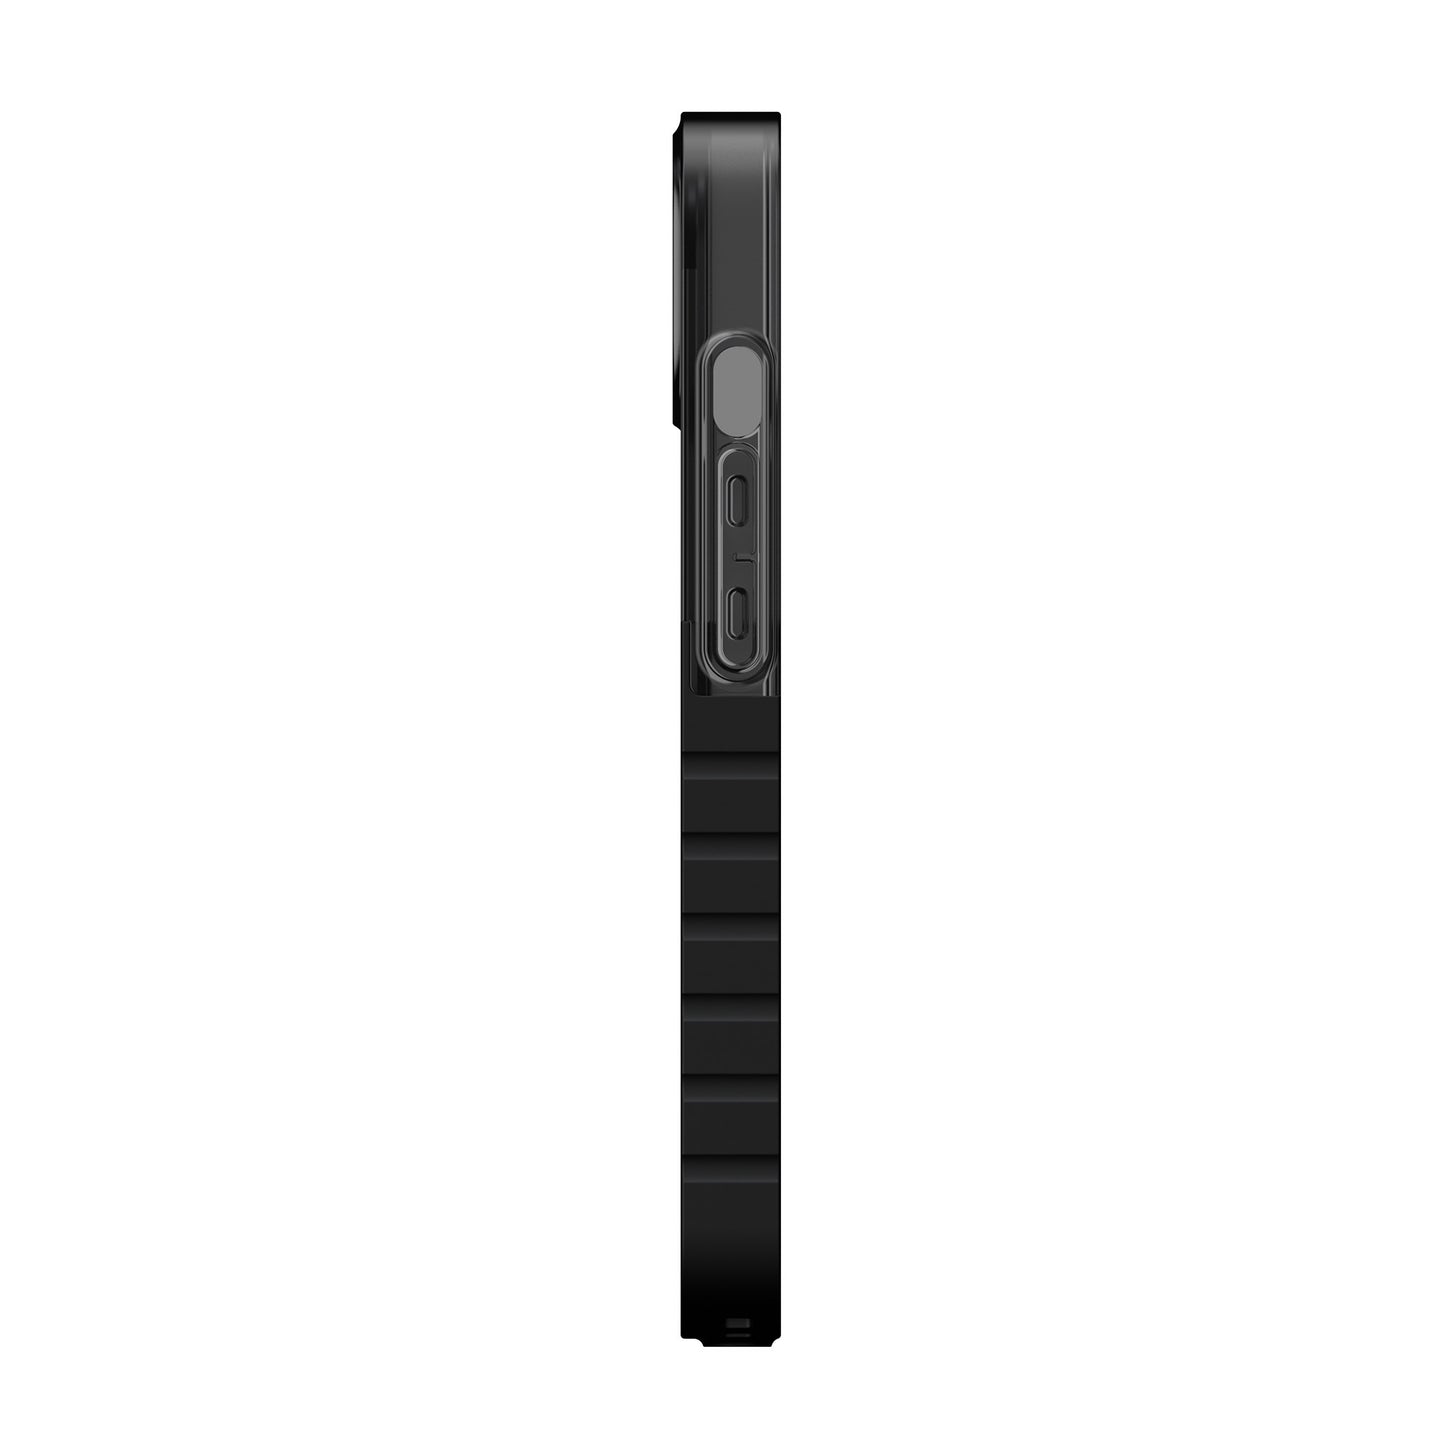 iPhone 13 UAG Dip Case - Black - 15-09400